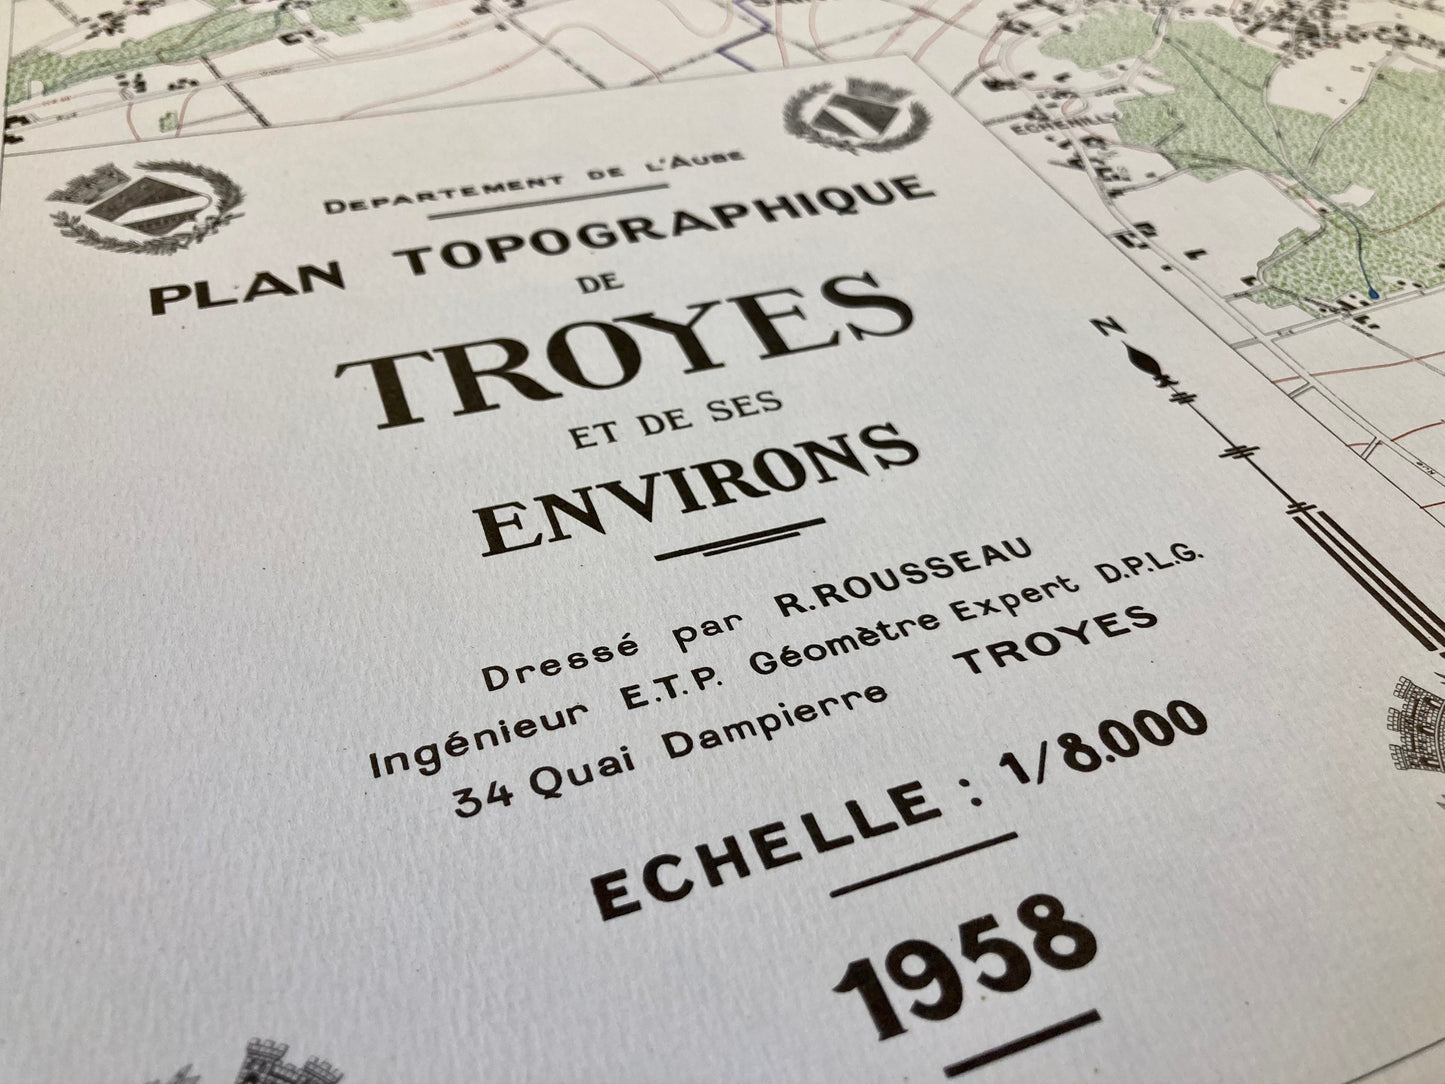 Cartouche de la carte topographique ancienne de Troyes